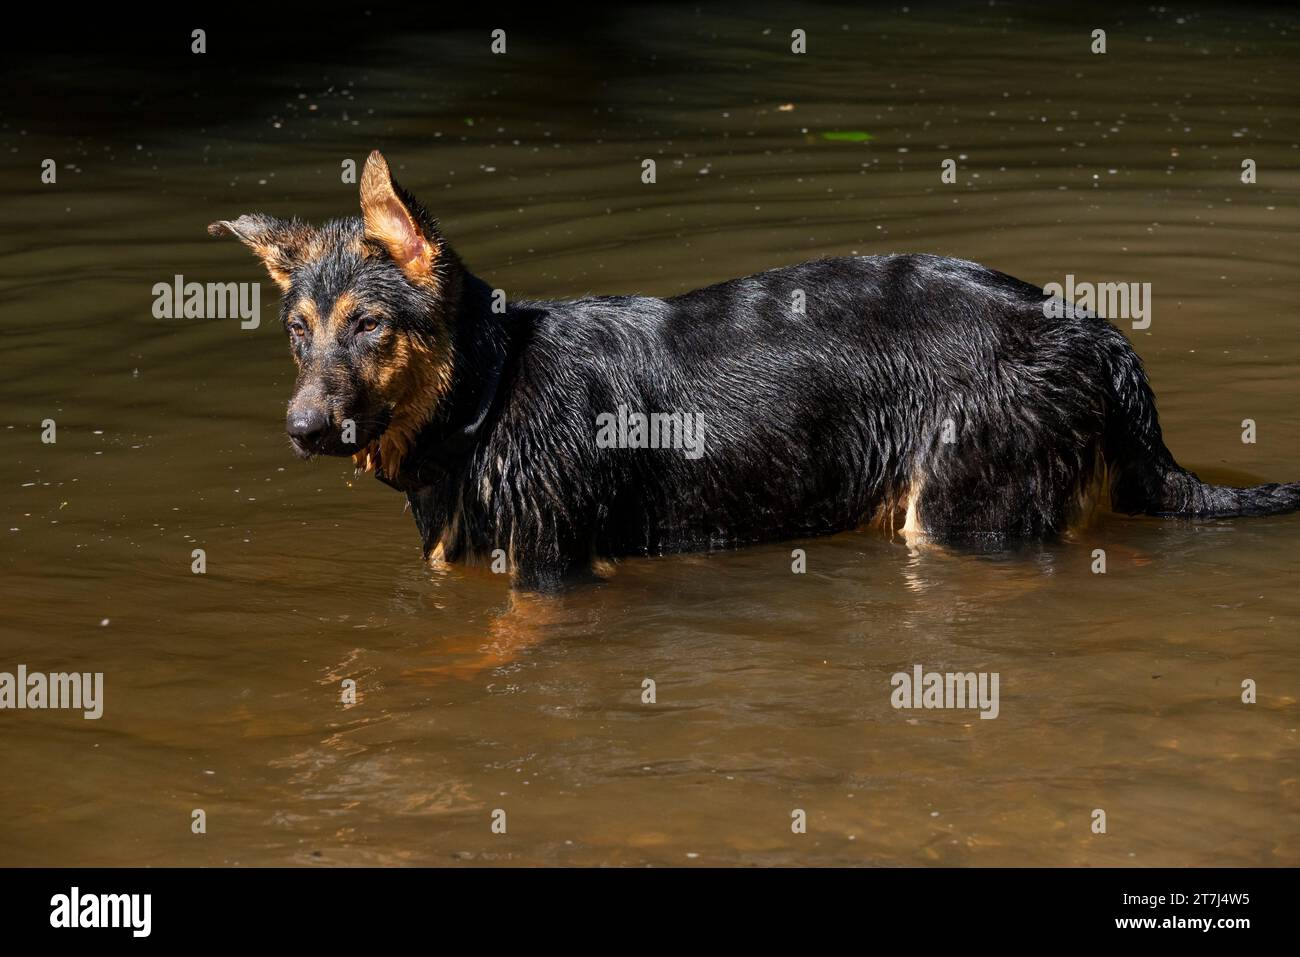 Jeune Berger allemand s'amusant dans l'eau d'une rivière en été. Banque D'Images